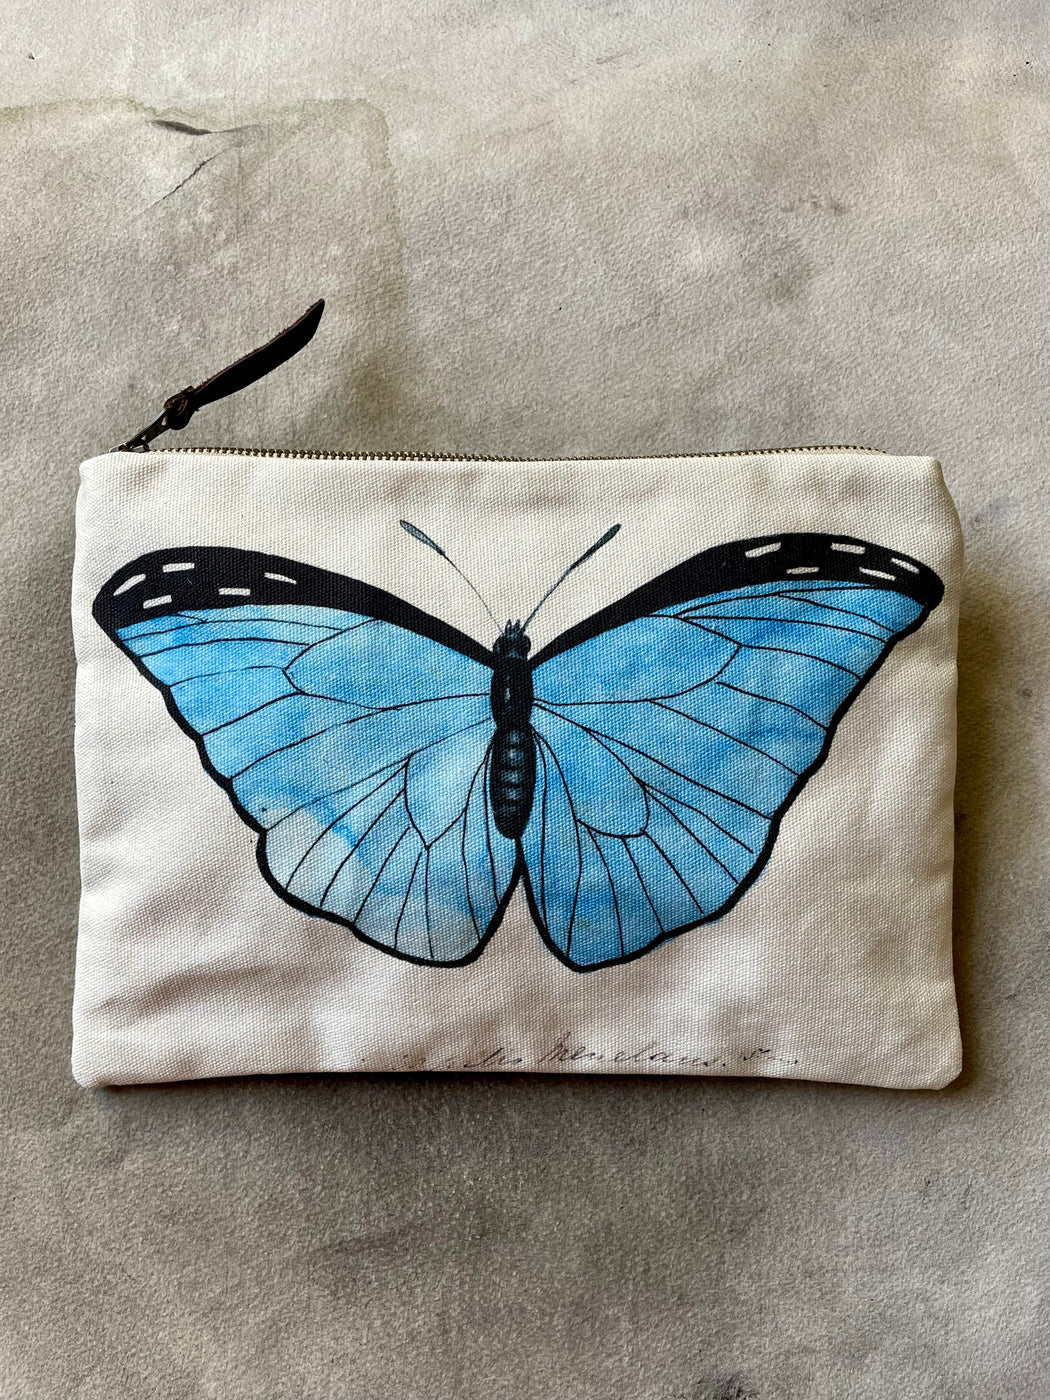 "Blue Butterflies" Canvas Zipper Pouch by John Derian